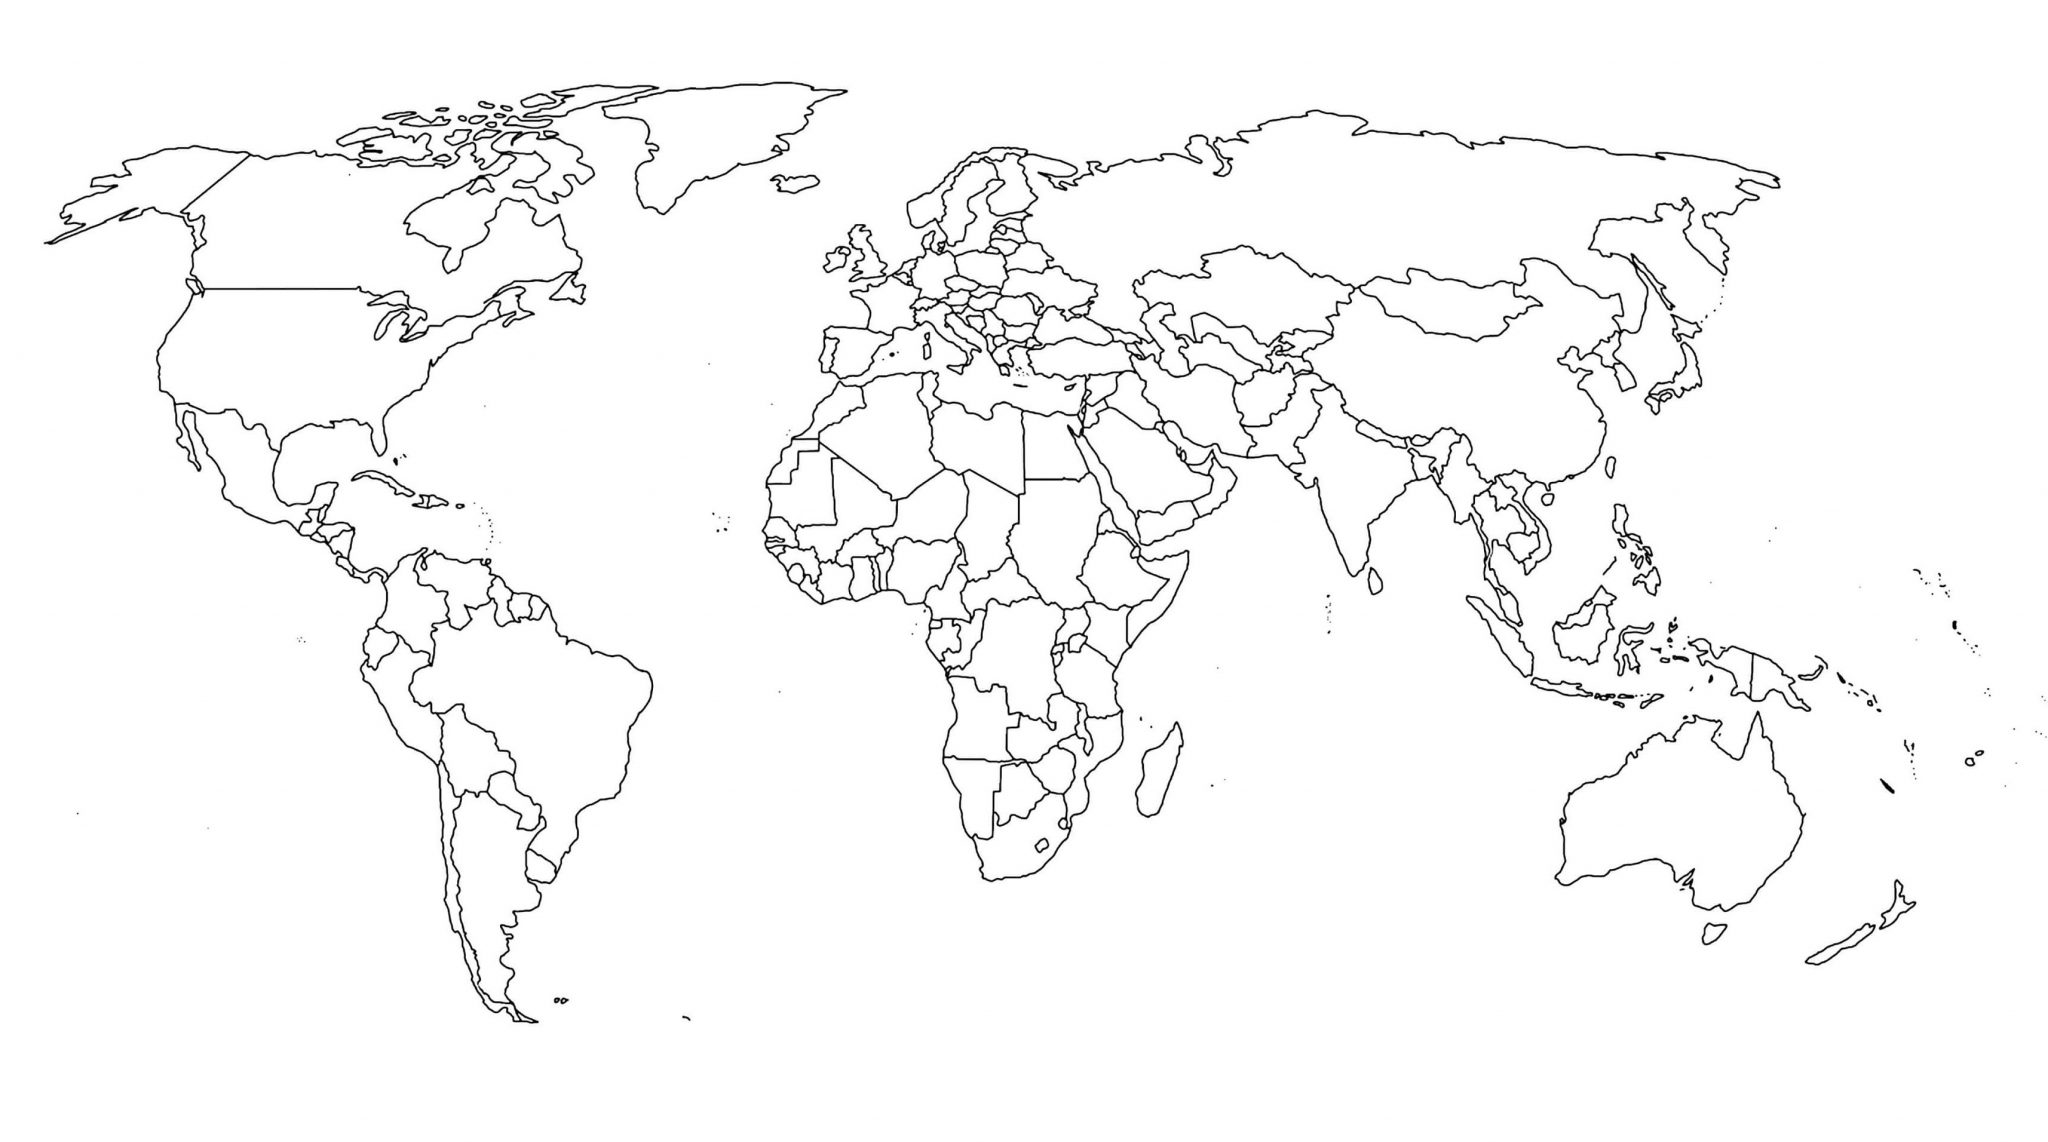 Mapa Múndi: físico, geológico, mundial, terrestre, topográfico e antigo.